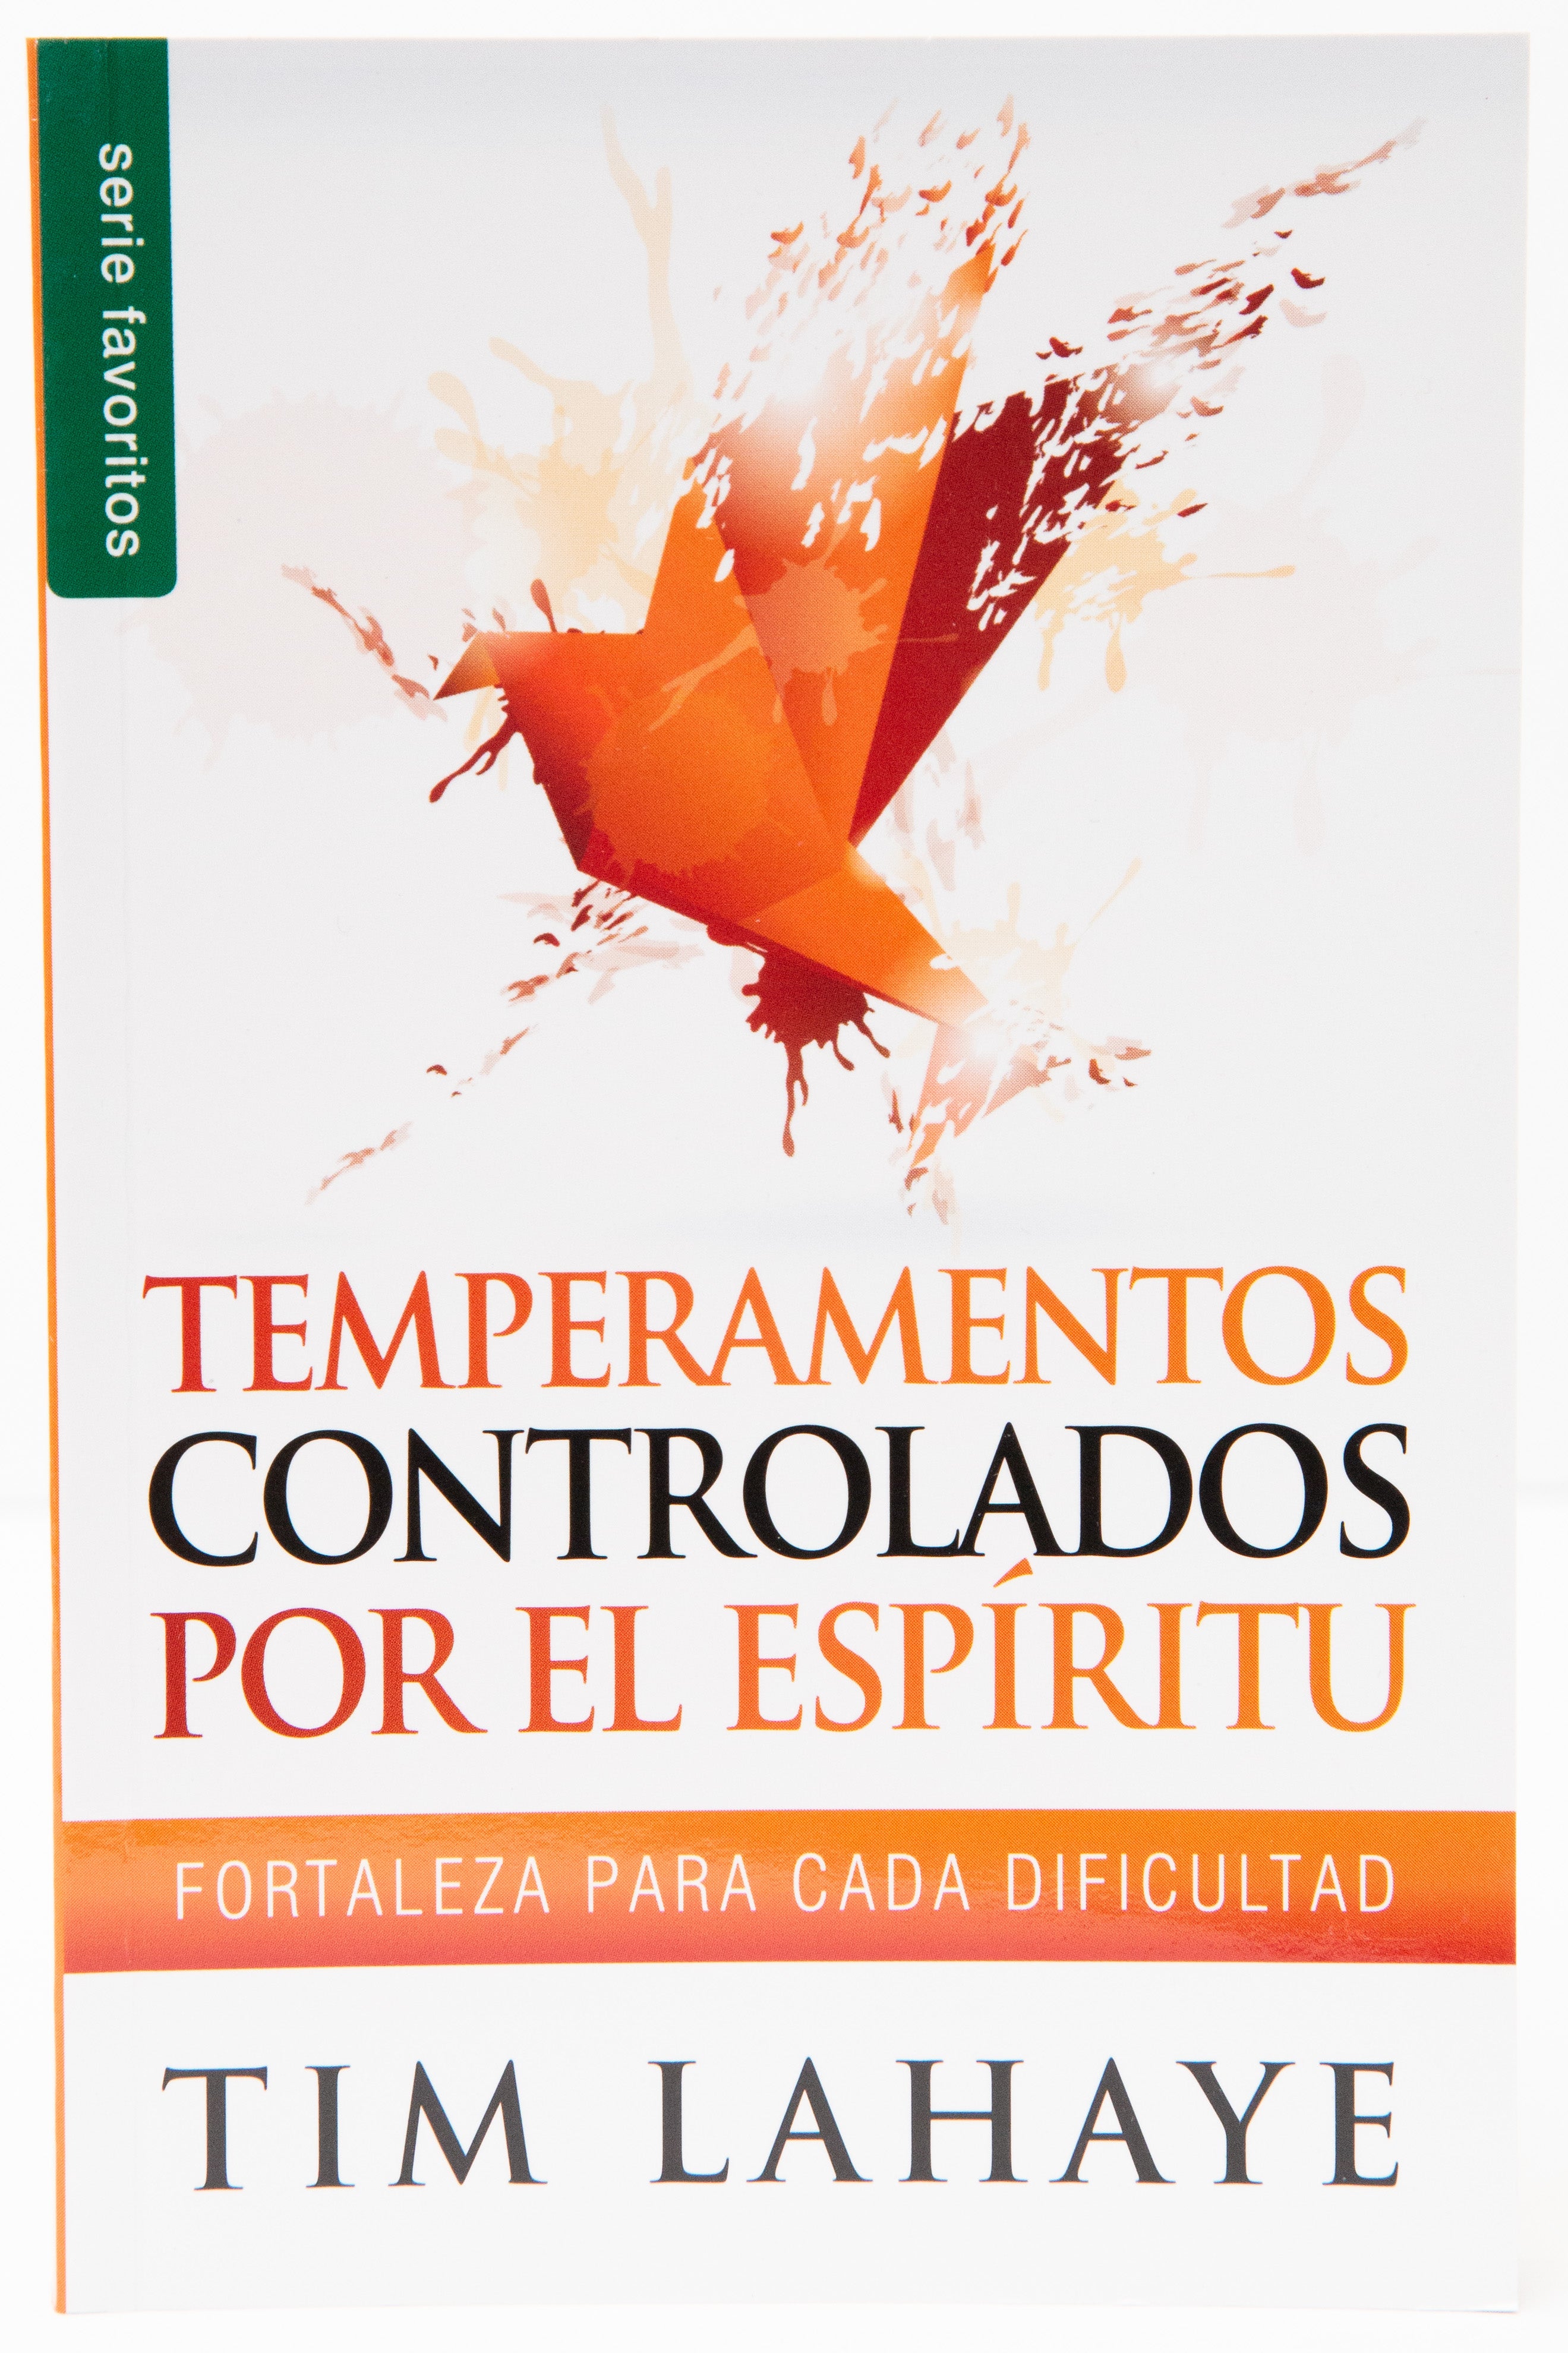 Temperamentos Controlados por el Espíritu Santo favoritos - Librería Libros Cristianos - Libro